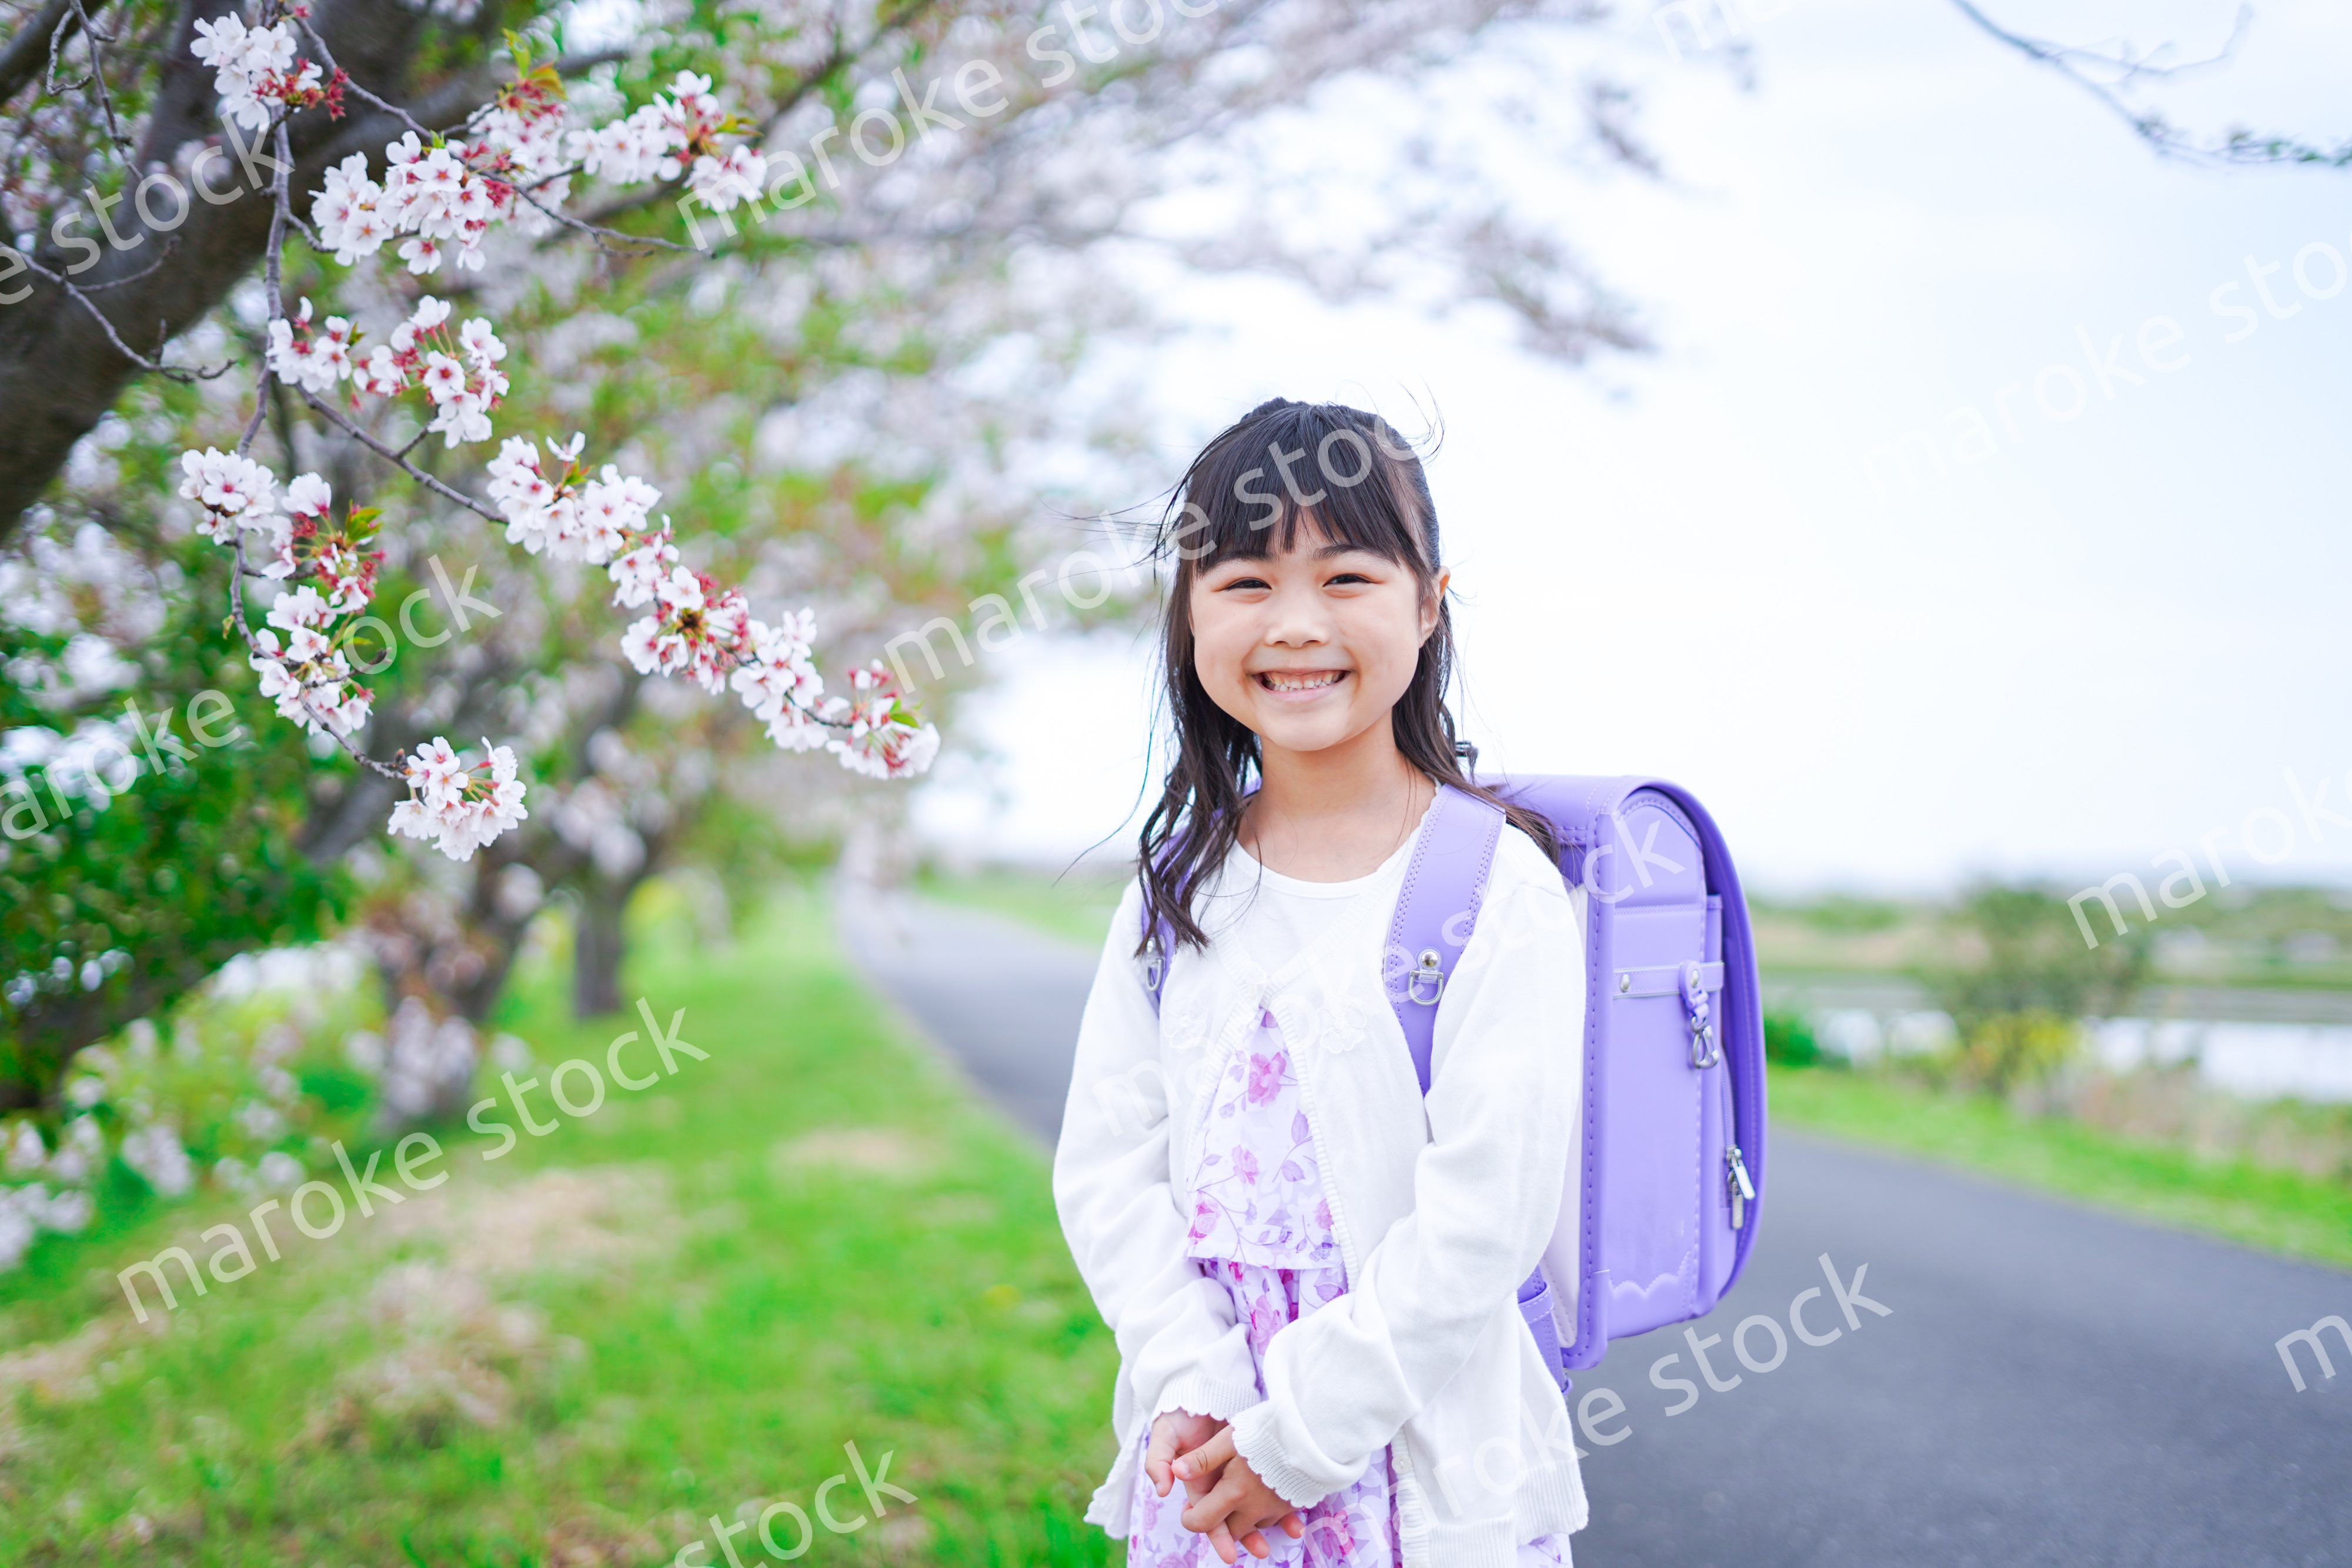 桜が咲く中登校する小さな女の子 Maroke Stock 写真素材をフォトグラファーから直接購入できるストックフォトサイト